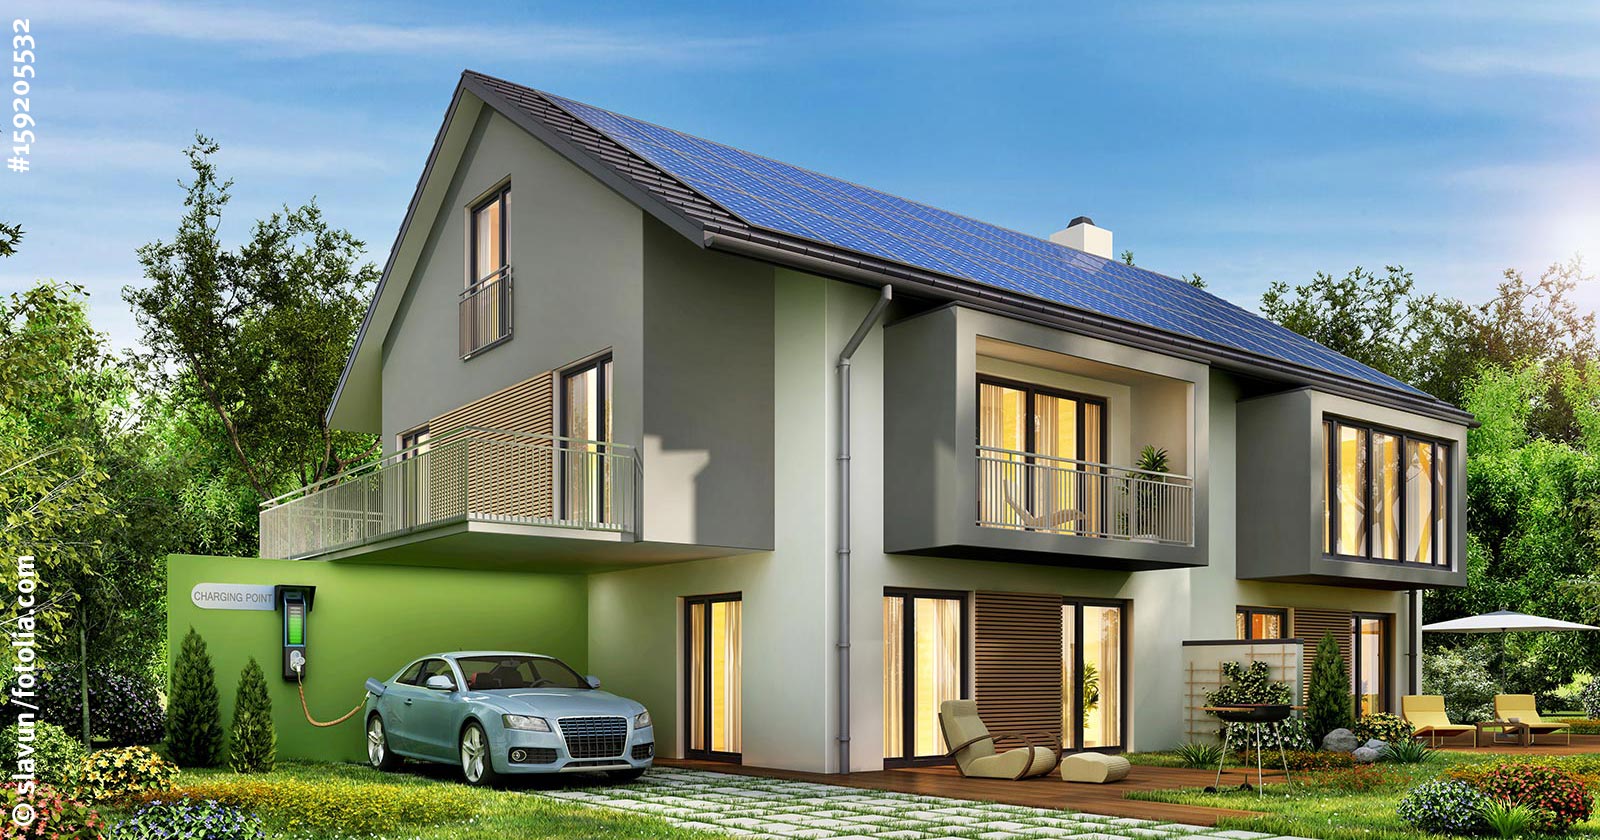 Haus mit Photovoltaik auf dem Dach, Wallbox und E-Auto